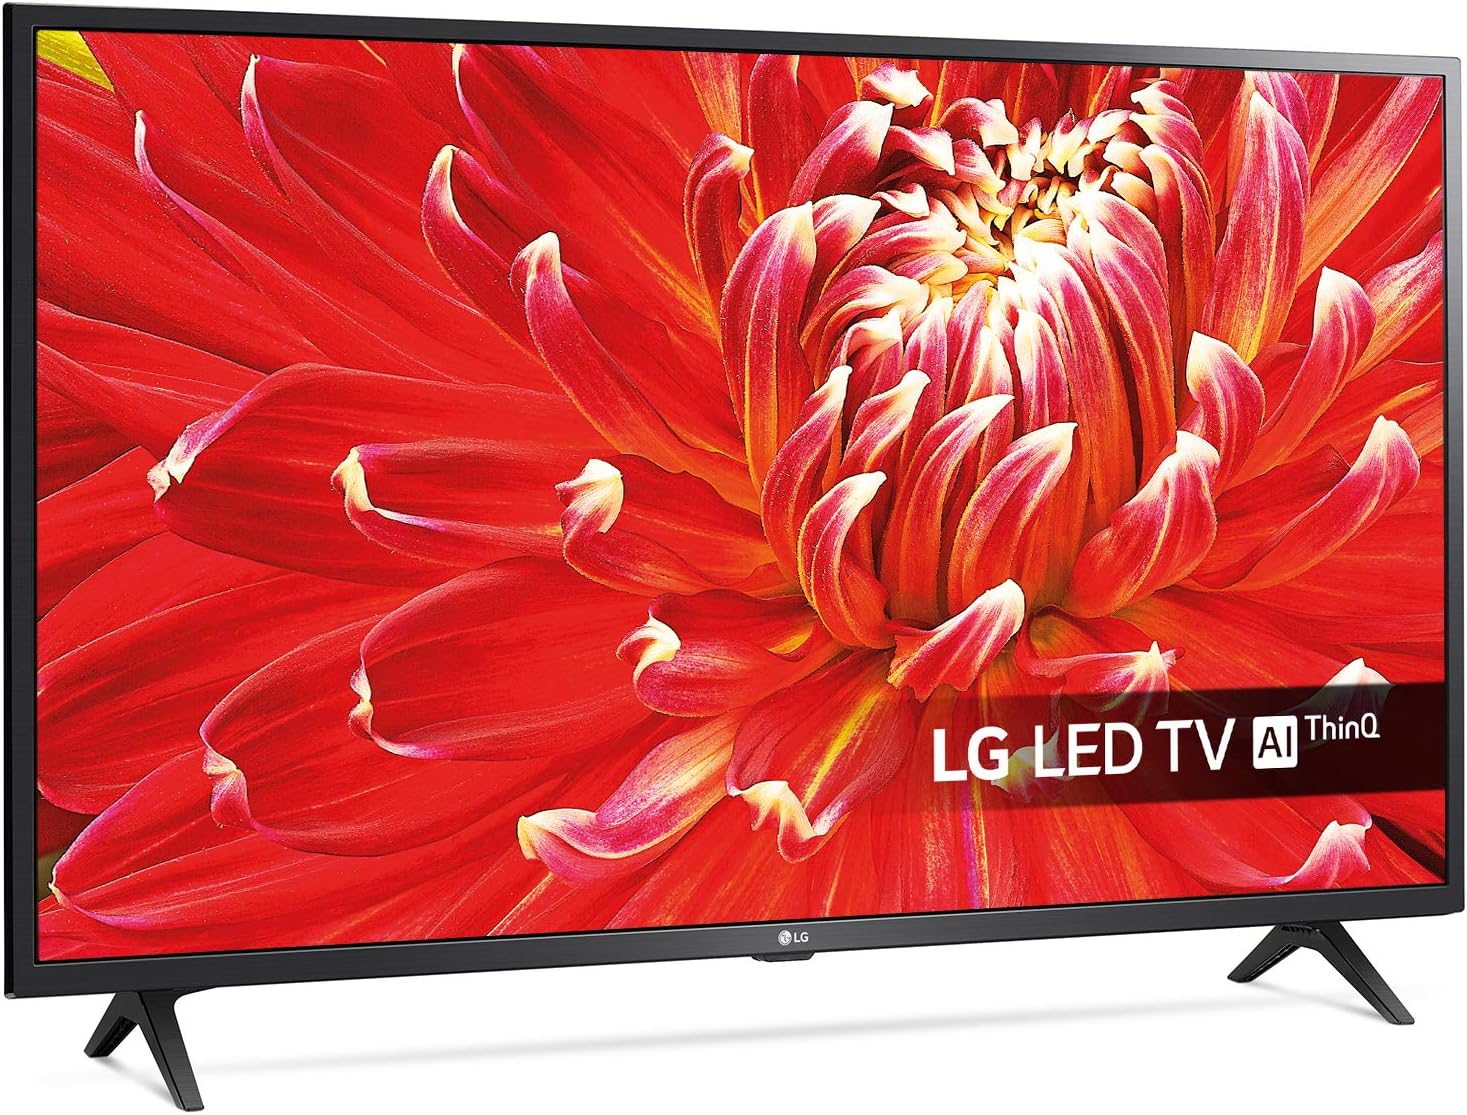 LG 32LM6300PLA 32" Smart Full HD HDR LED TV